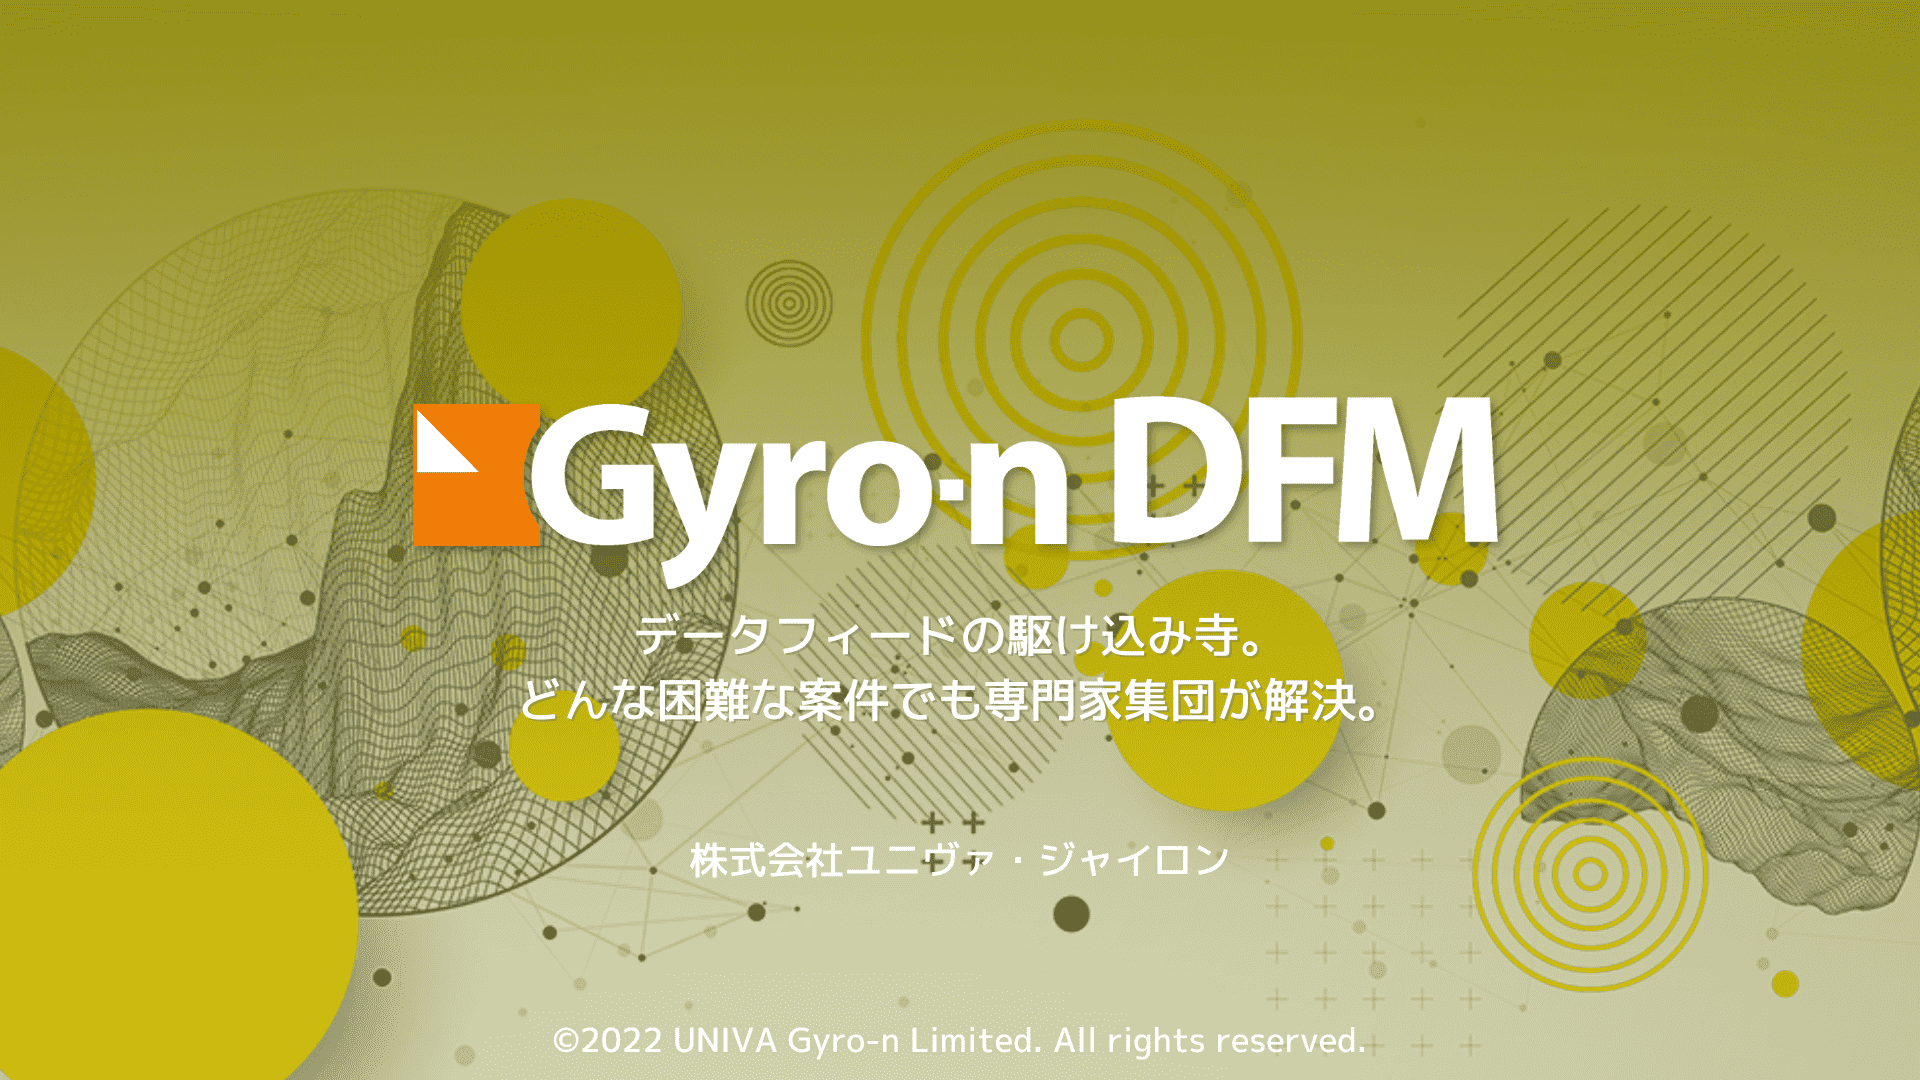 Gyro-n DFMサービス資料